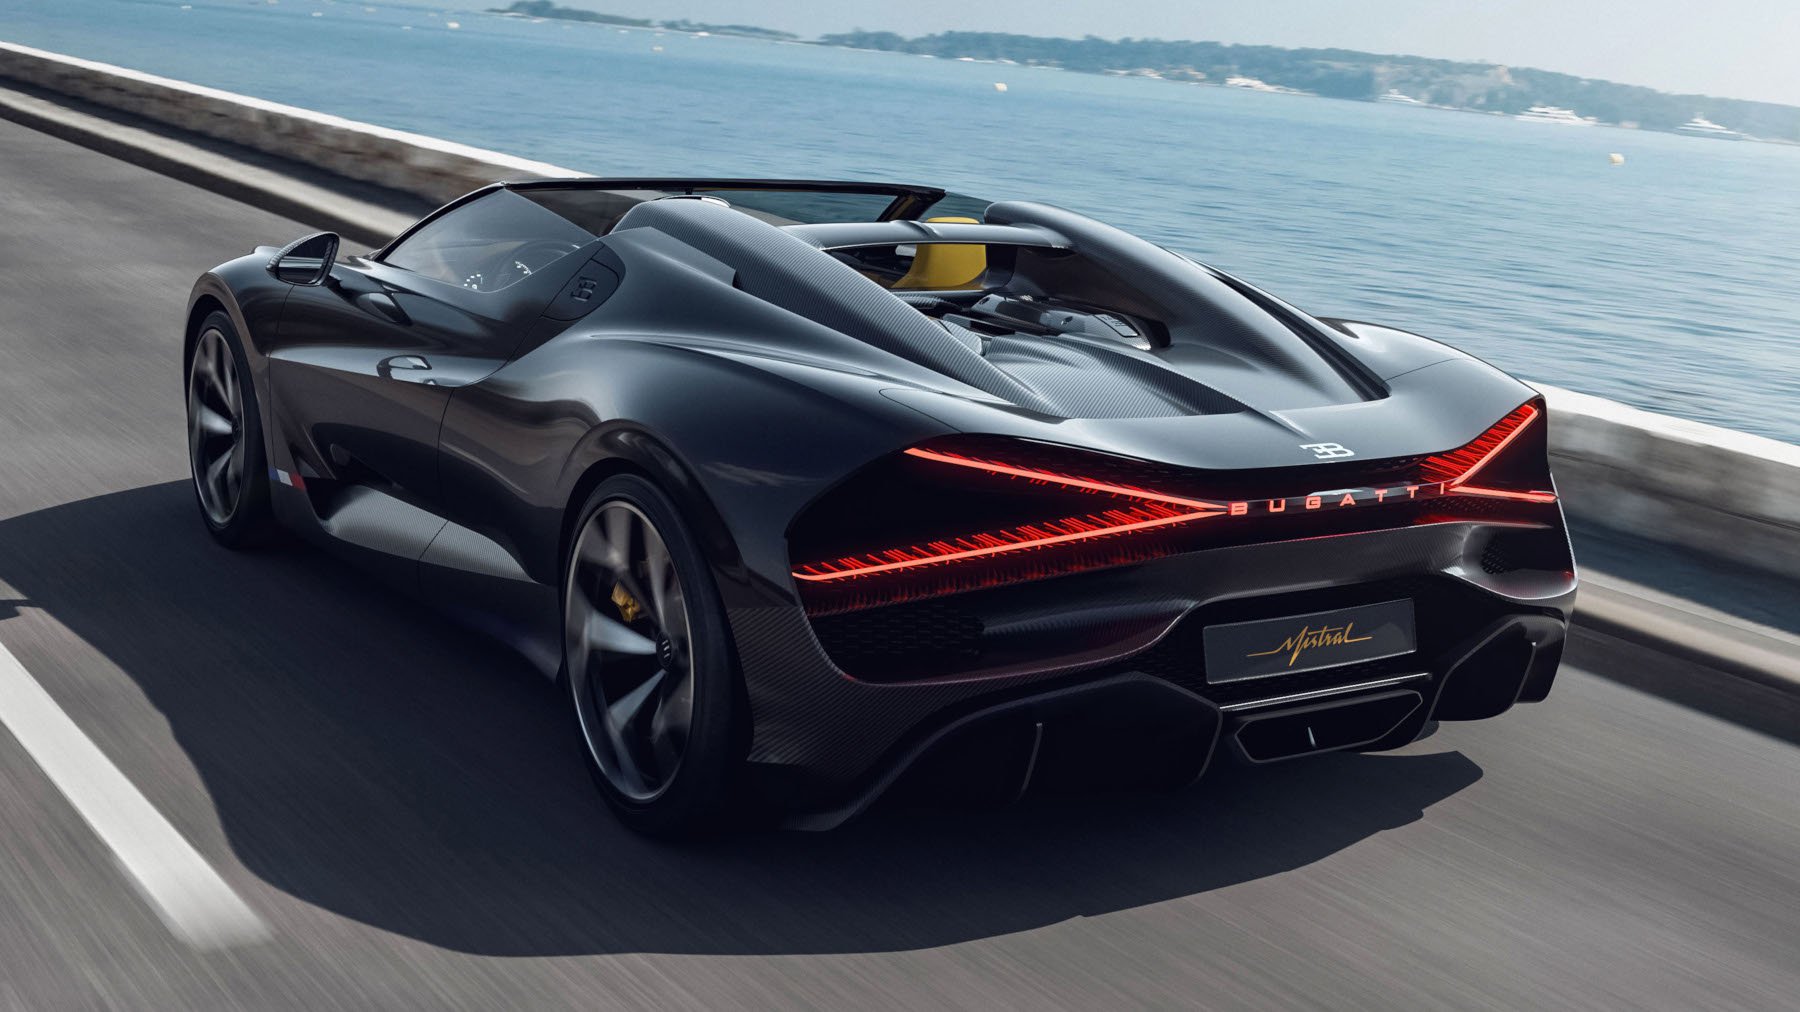 Η Bugatti ετοιμάζει το γρηγορότερο convertible όχημα στον κόσμο: Θα είναι το τελευταίο βενζινοκίνητο